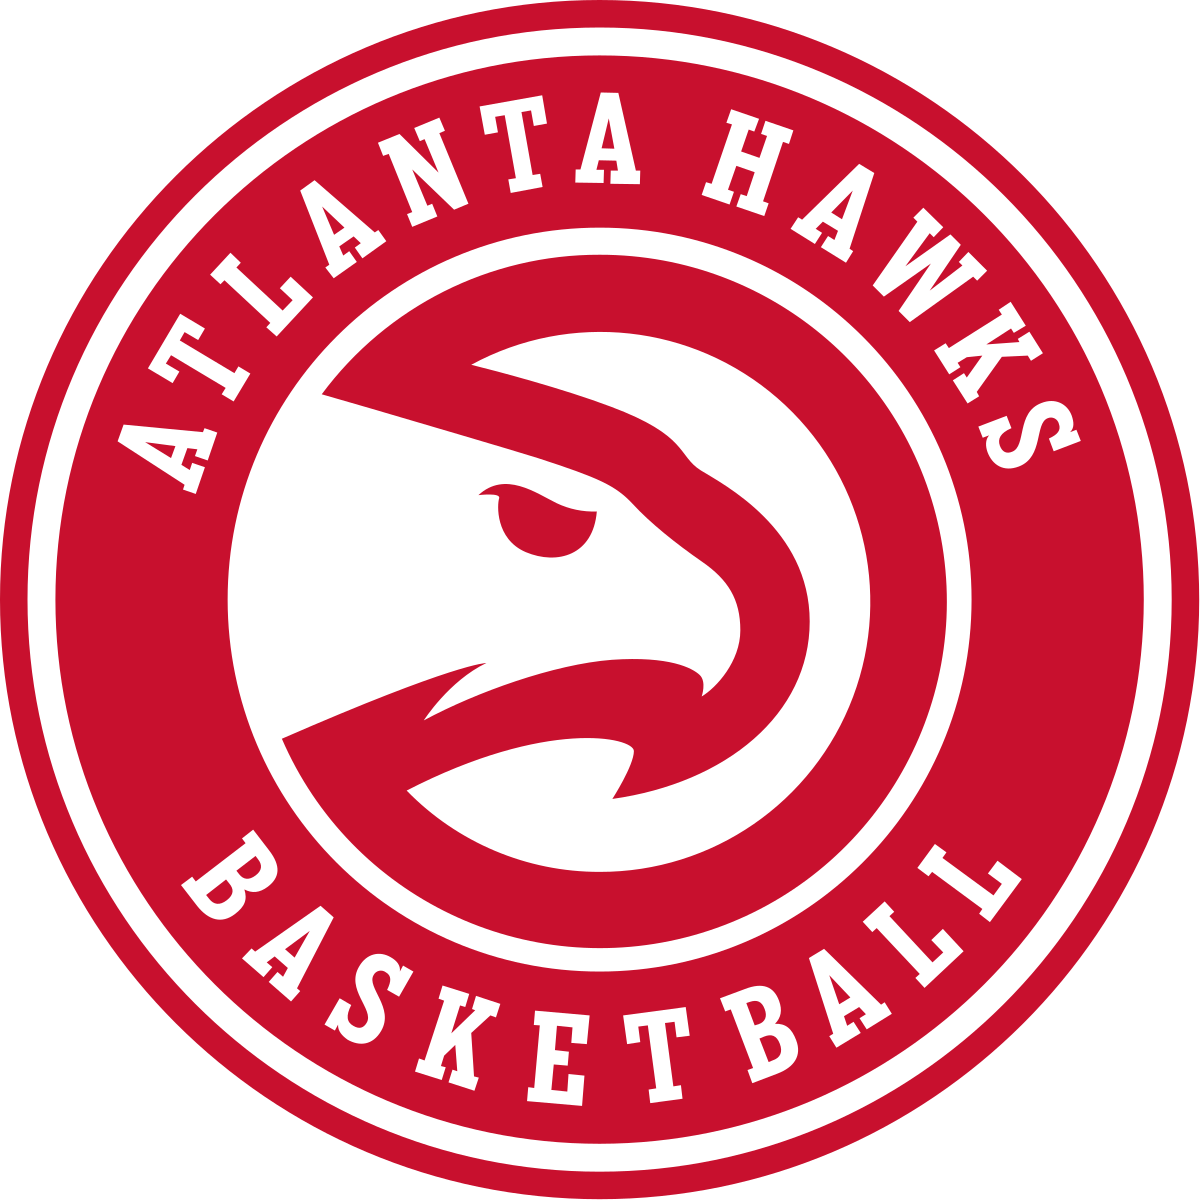 Atlanta Hawks Logo PNG Picture